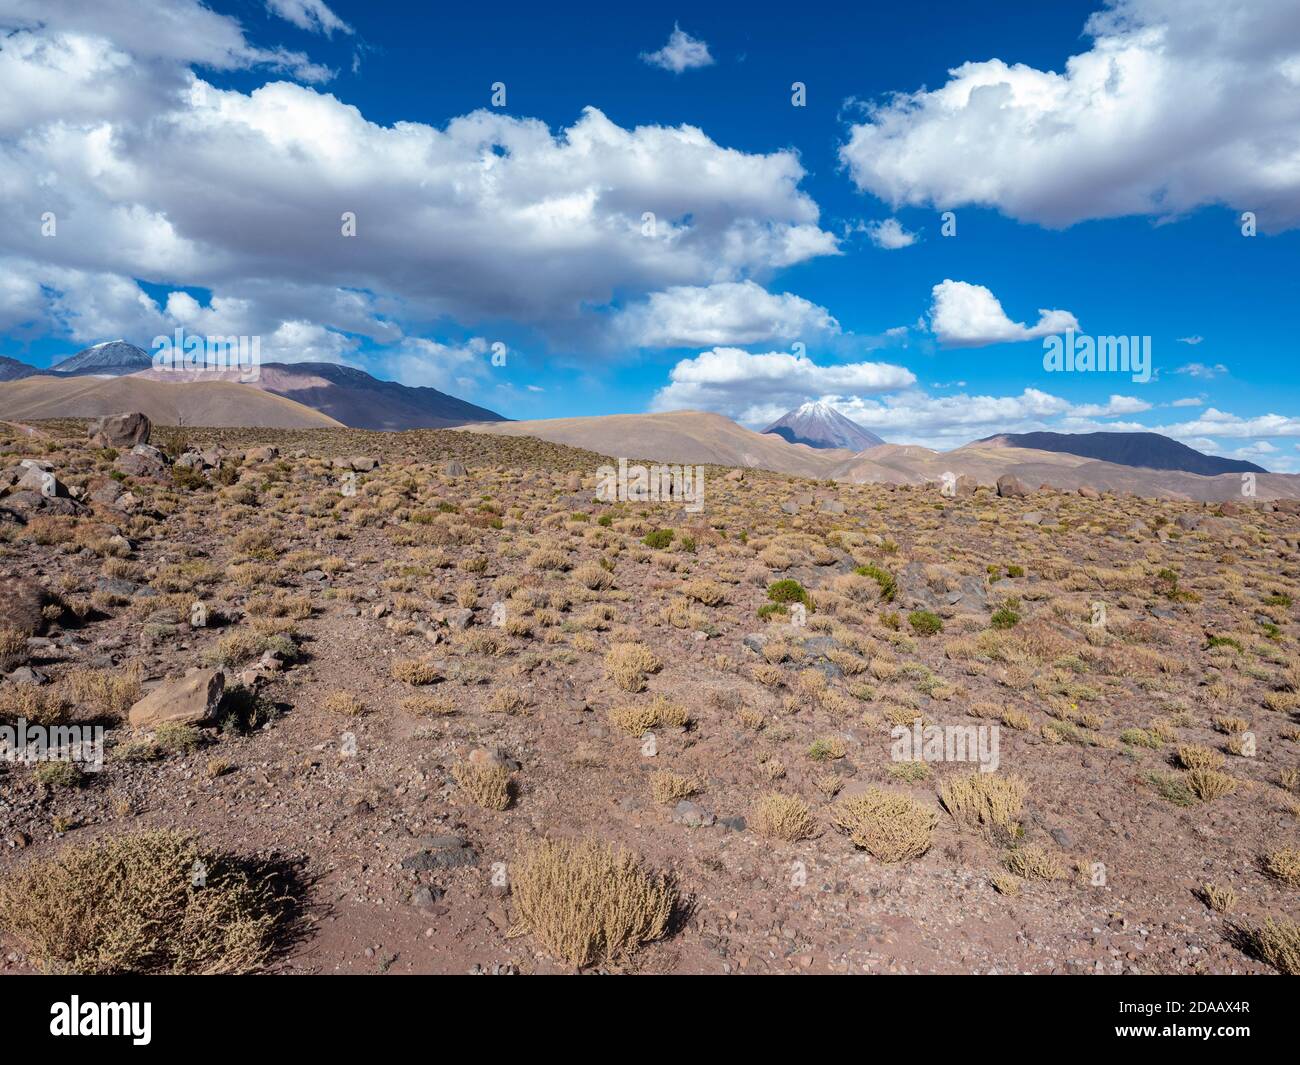 Il deserto di Atacama è una regione iper-arida situata in Cile, in Sud America. Atacama è conosciuta per essere una delle regioni più aride della Terra. Foto Stock